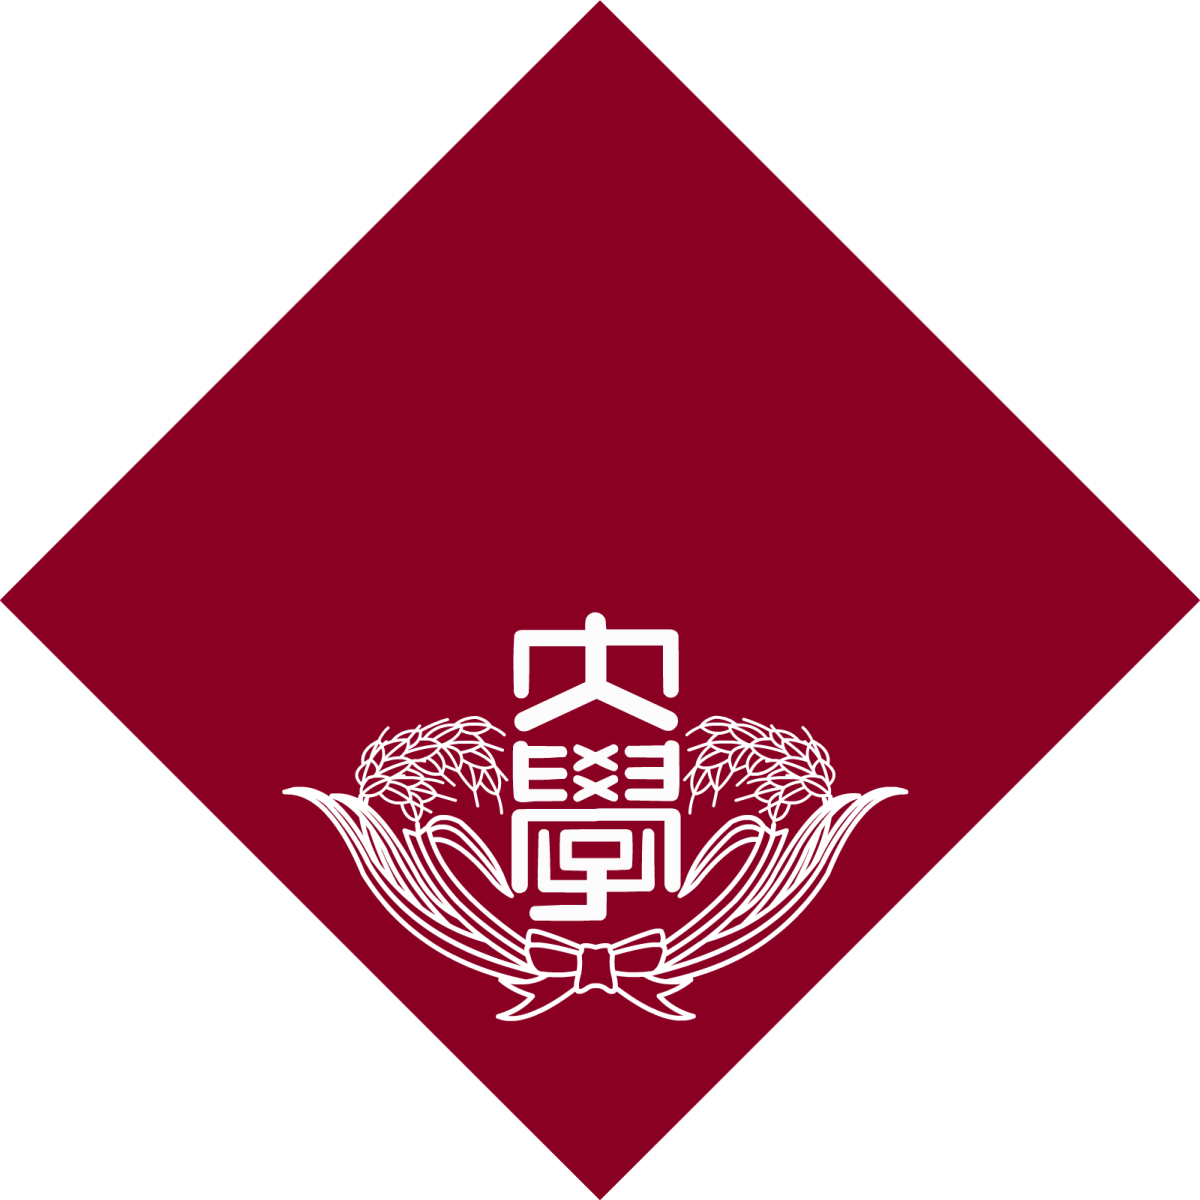 Waseda Emblem